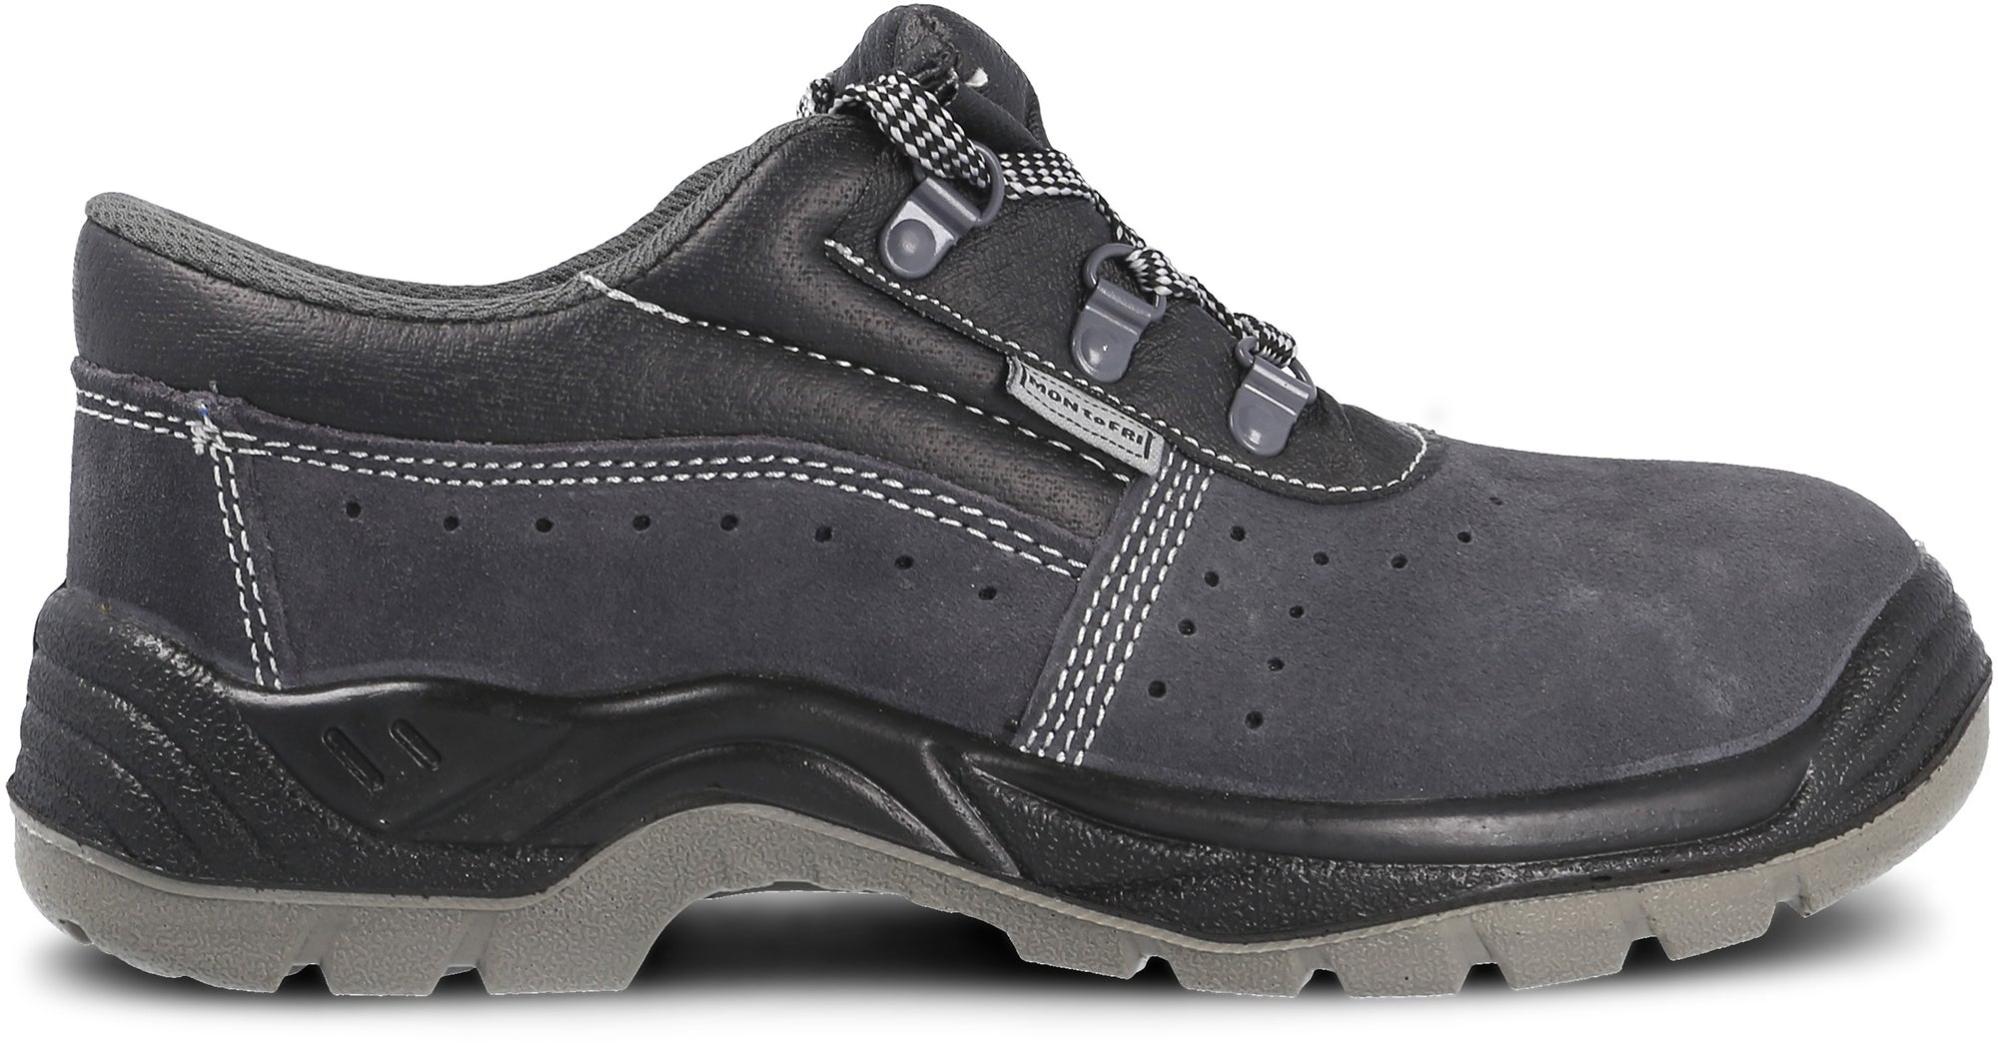 Zapato seguridad paredes, zp1002 serraje gris, s1p talla 36